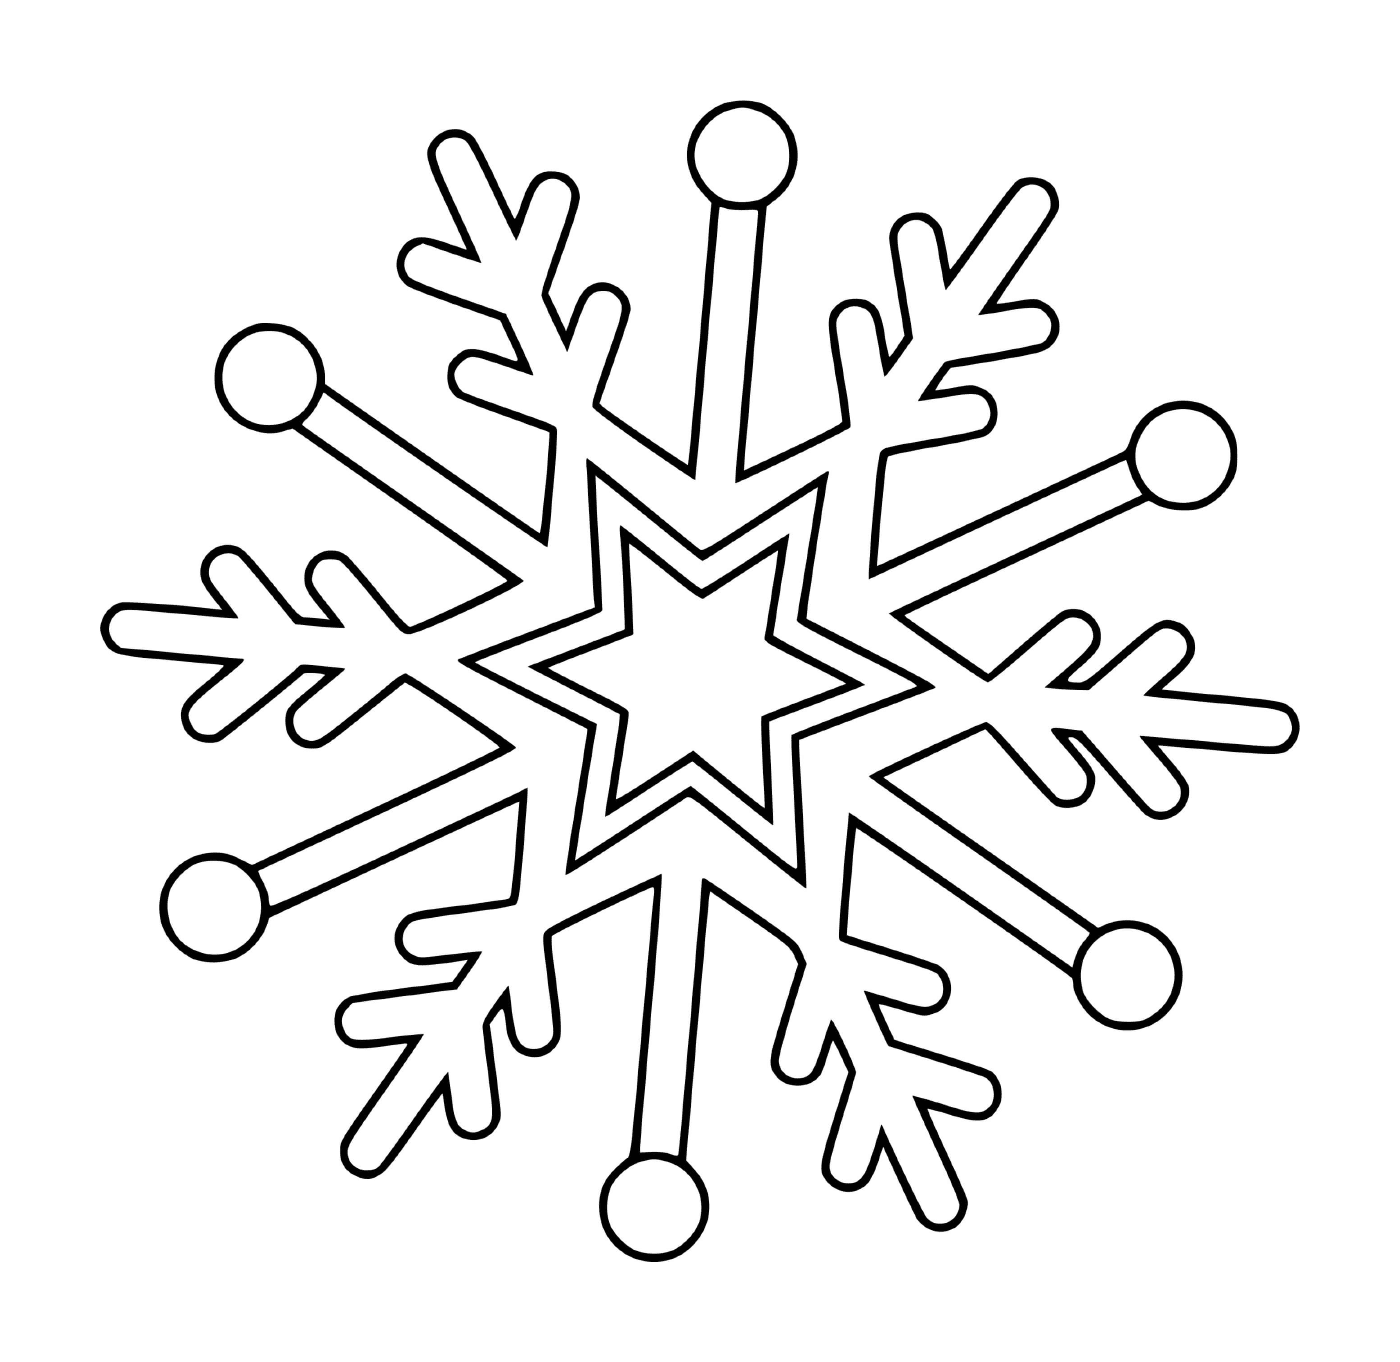  Snowflake delicacy 